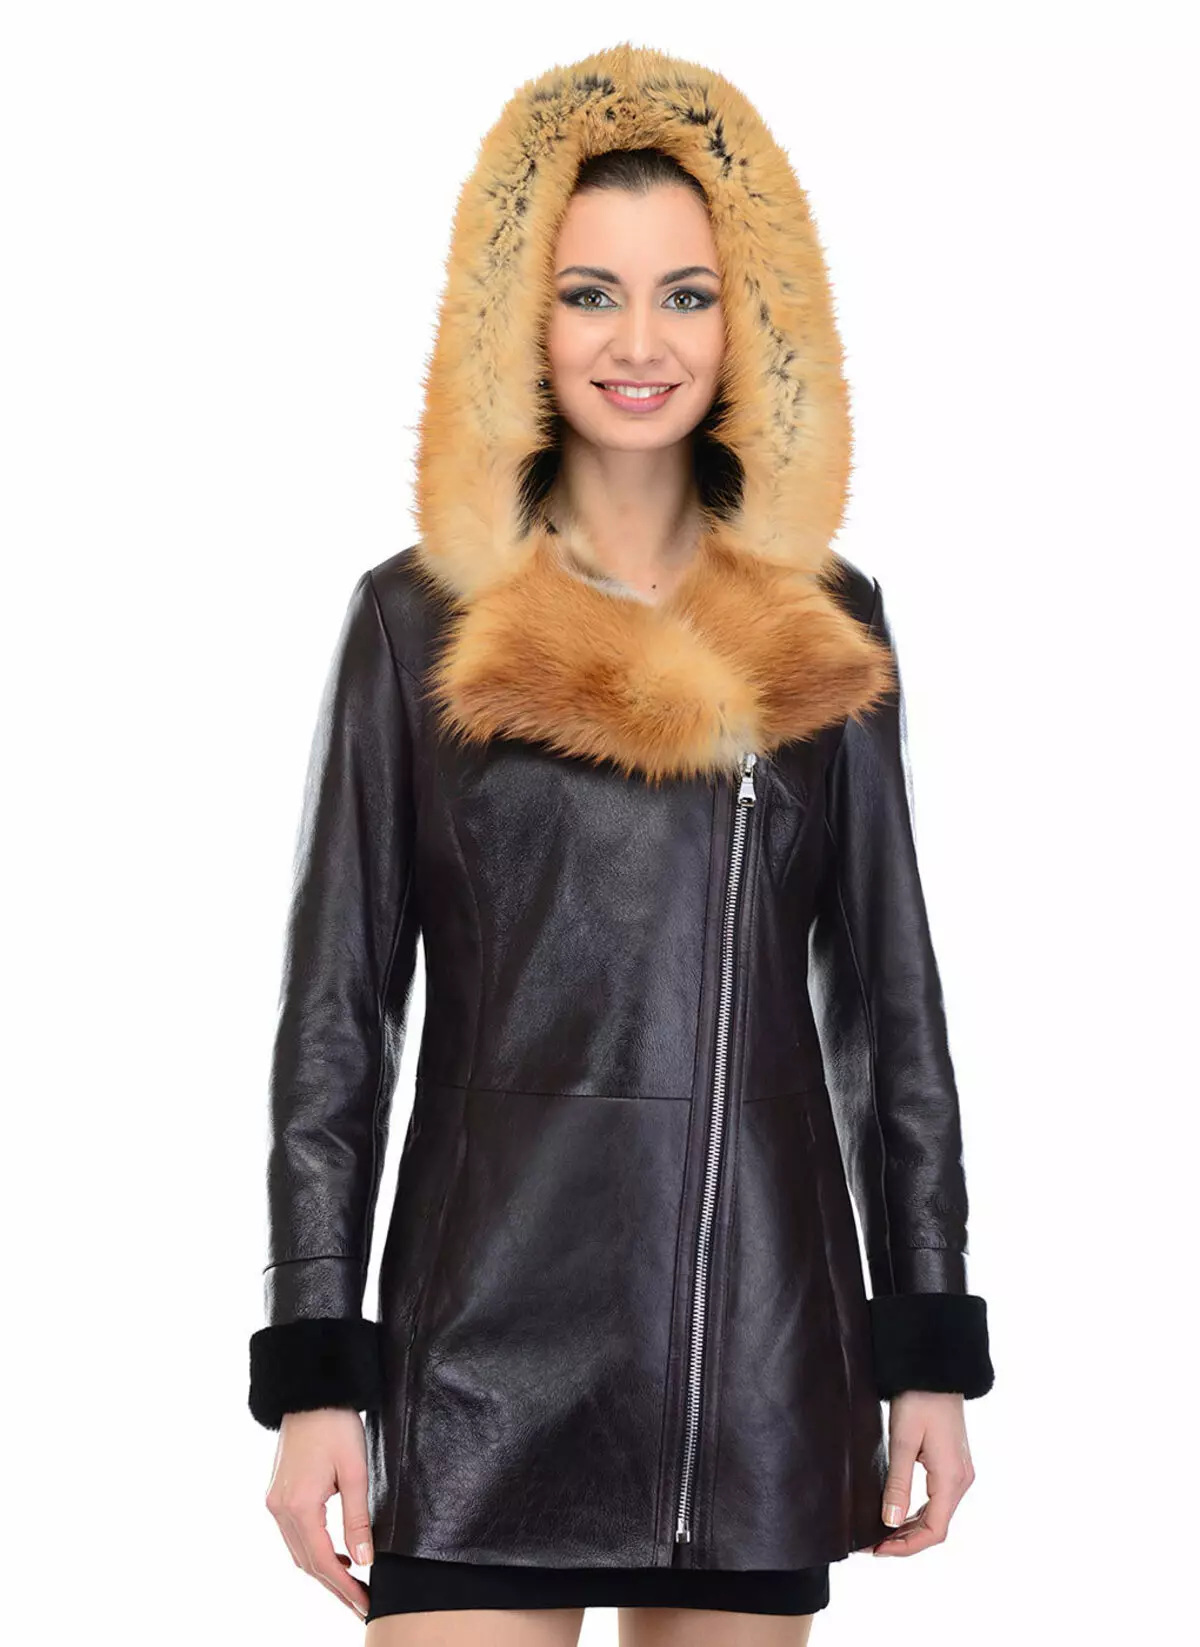 Calyaev's Coat (50 fotos): models de dona de Fur Factory Kalyaev, crítiques 382_3